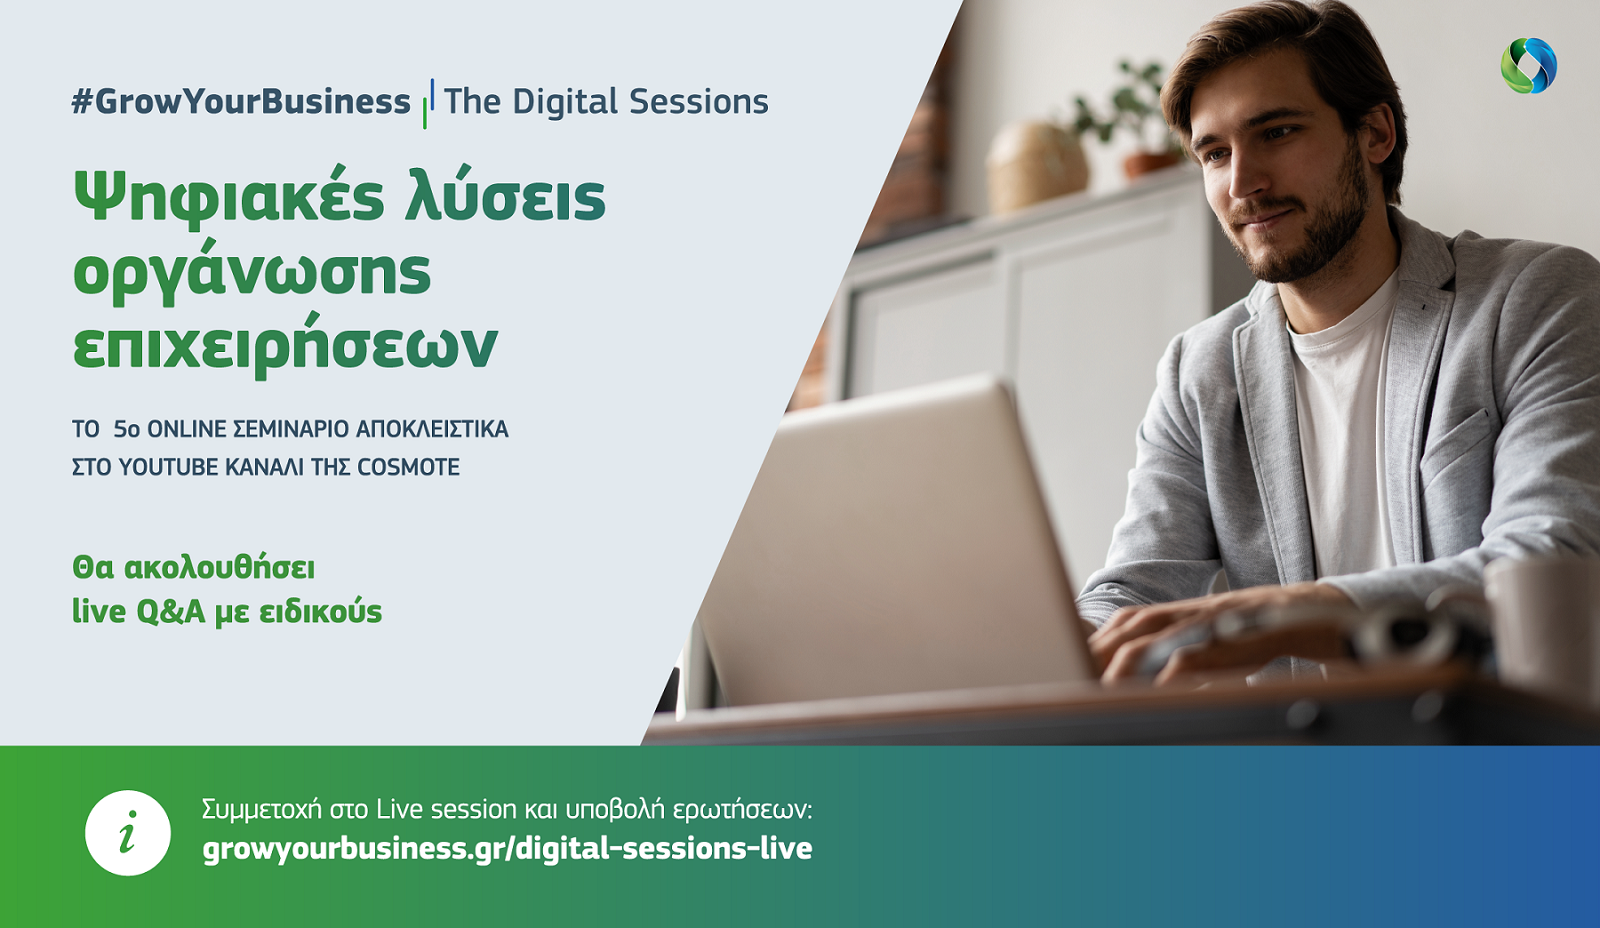 Μάθε για τις ψηφιακές λύσεις οργάνωσης επιχειρήσεων μέσα από την 5η ενότητα του #GrowYourBusiness – The Digital Sessions